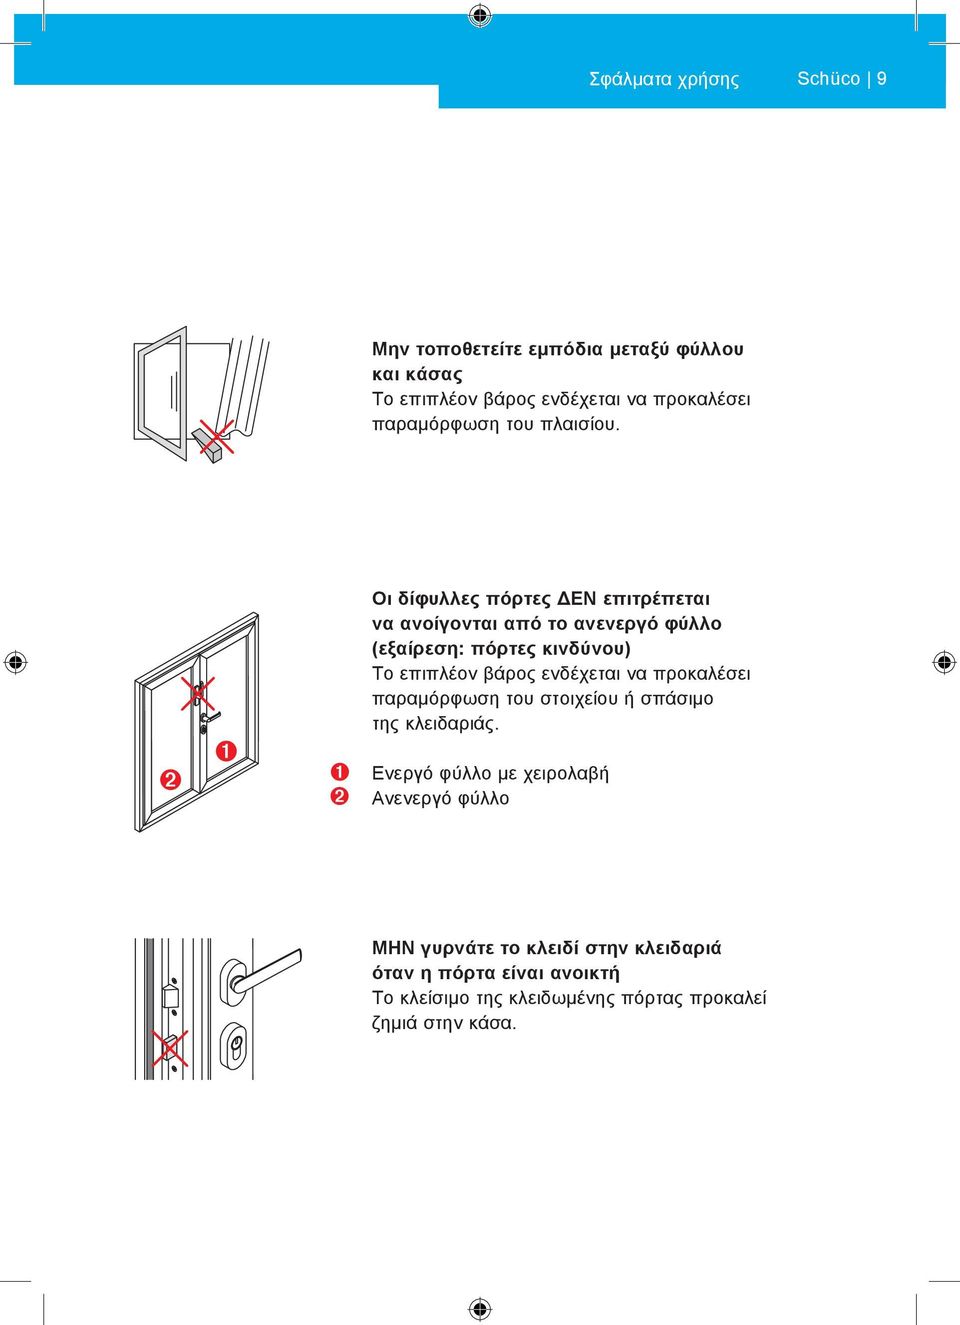 Οι δίφυλλες πόρτες ΔΕΝ επιτρέπεται να ανοίγονται από το ανενεργό φύλλο (εξαίρεση: πόρτες κινδύνου) Το επιπλέον βάρος